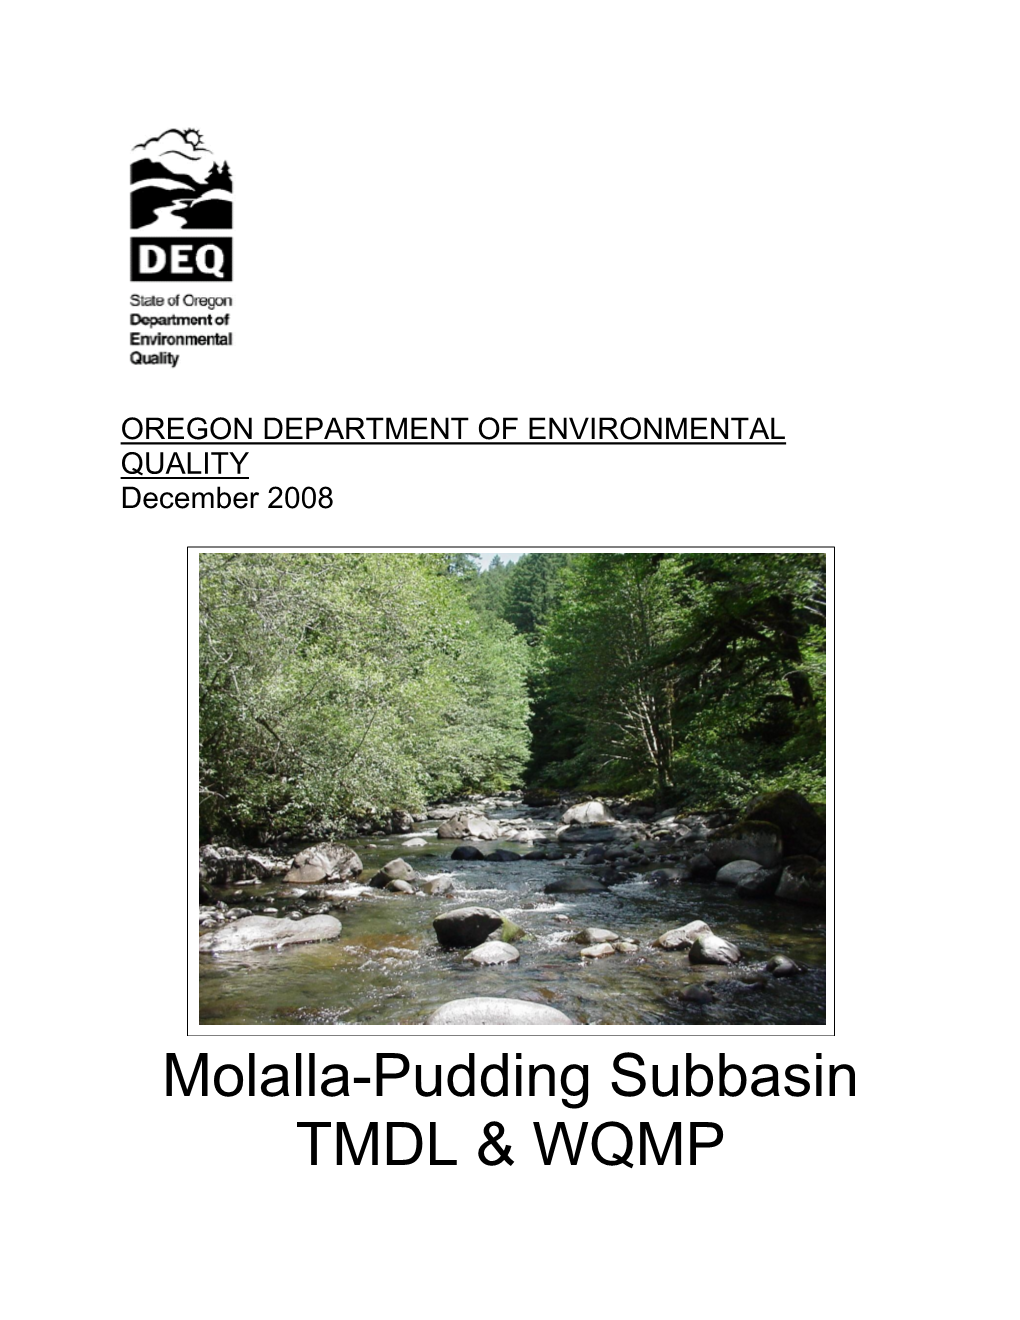 Molalla-Pudding Subbasin TMDL & WQMP